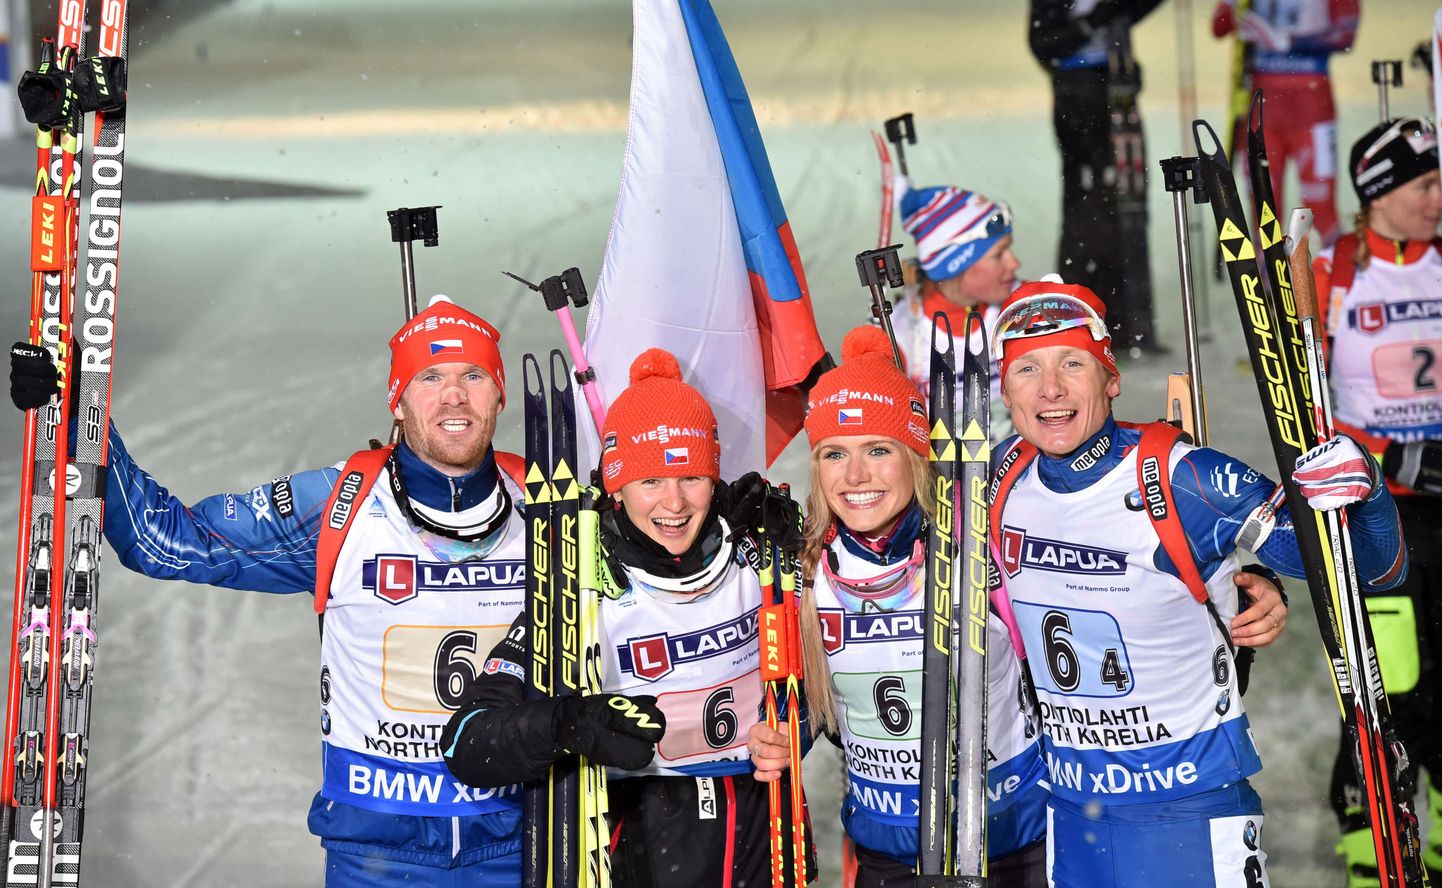 Победители гонки - чешские биатлонисты.